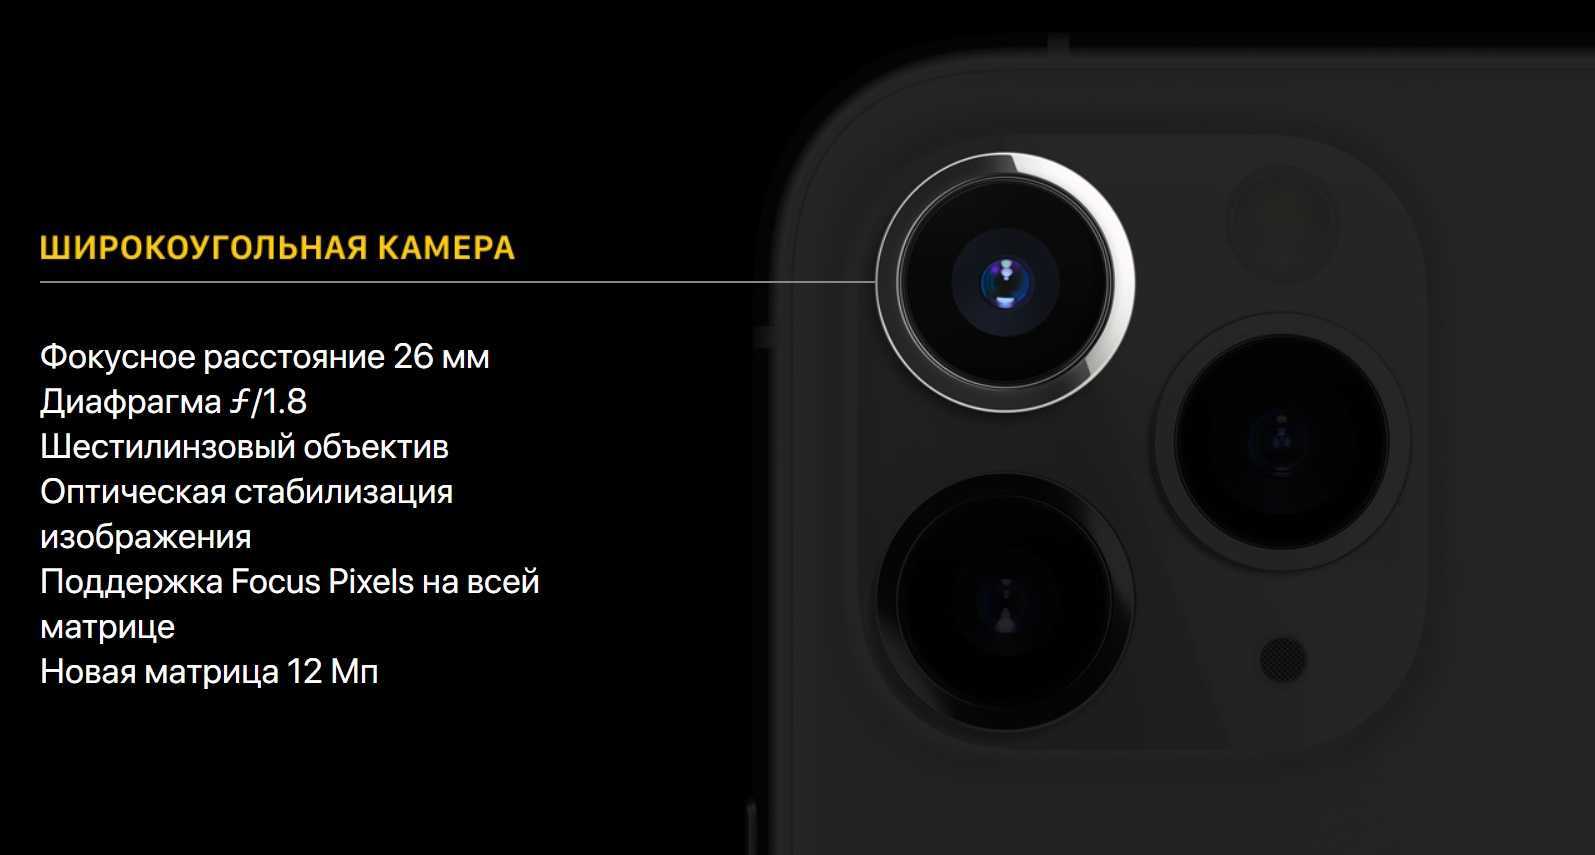 Обзор iphone 11 pro и pro max, примеры фото с камеры